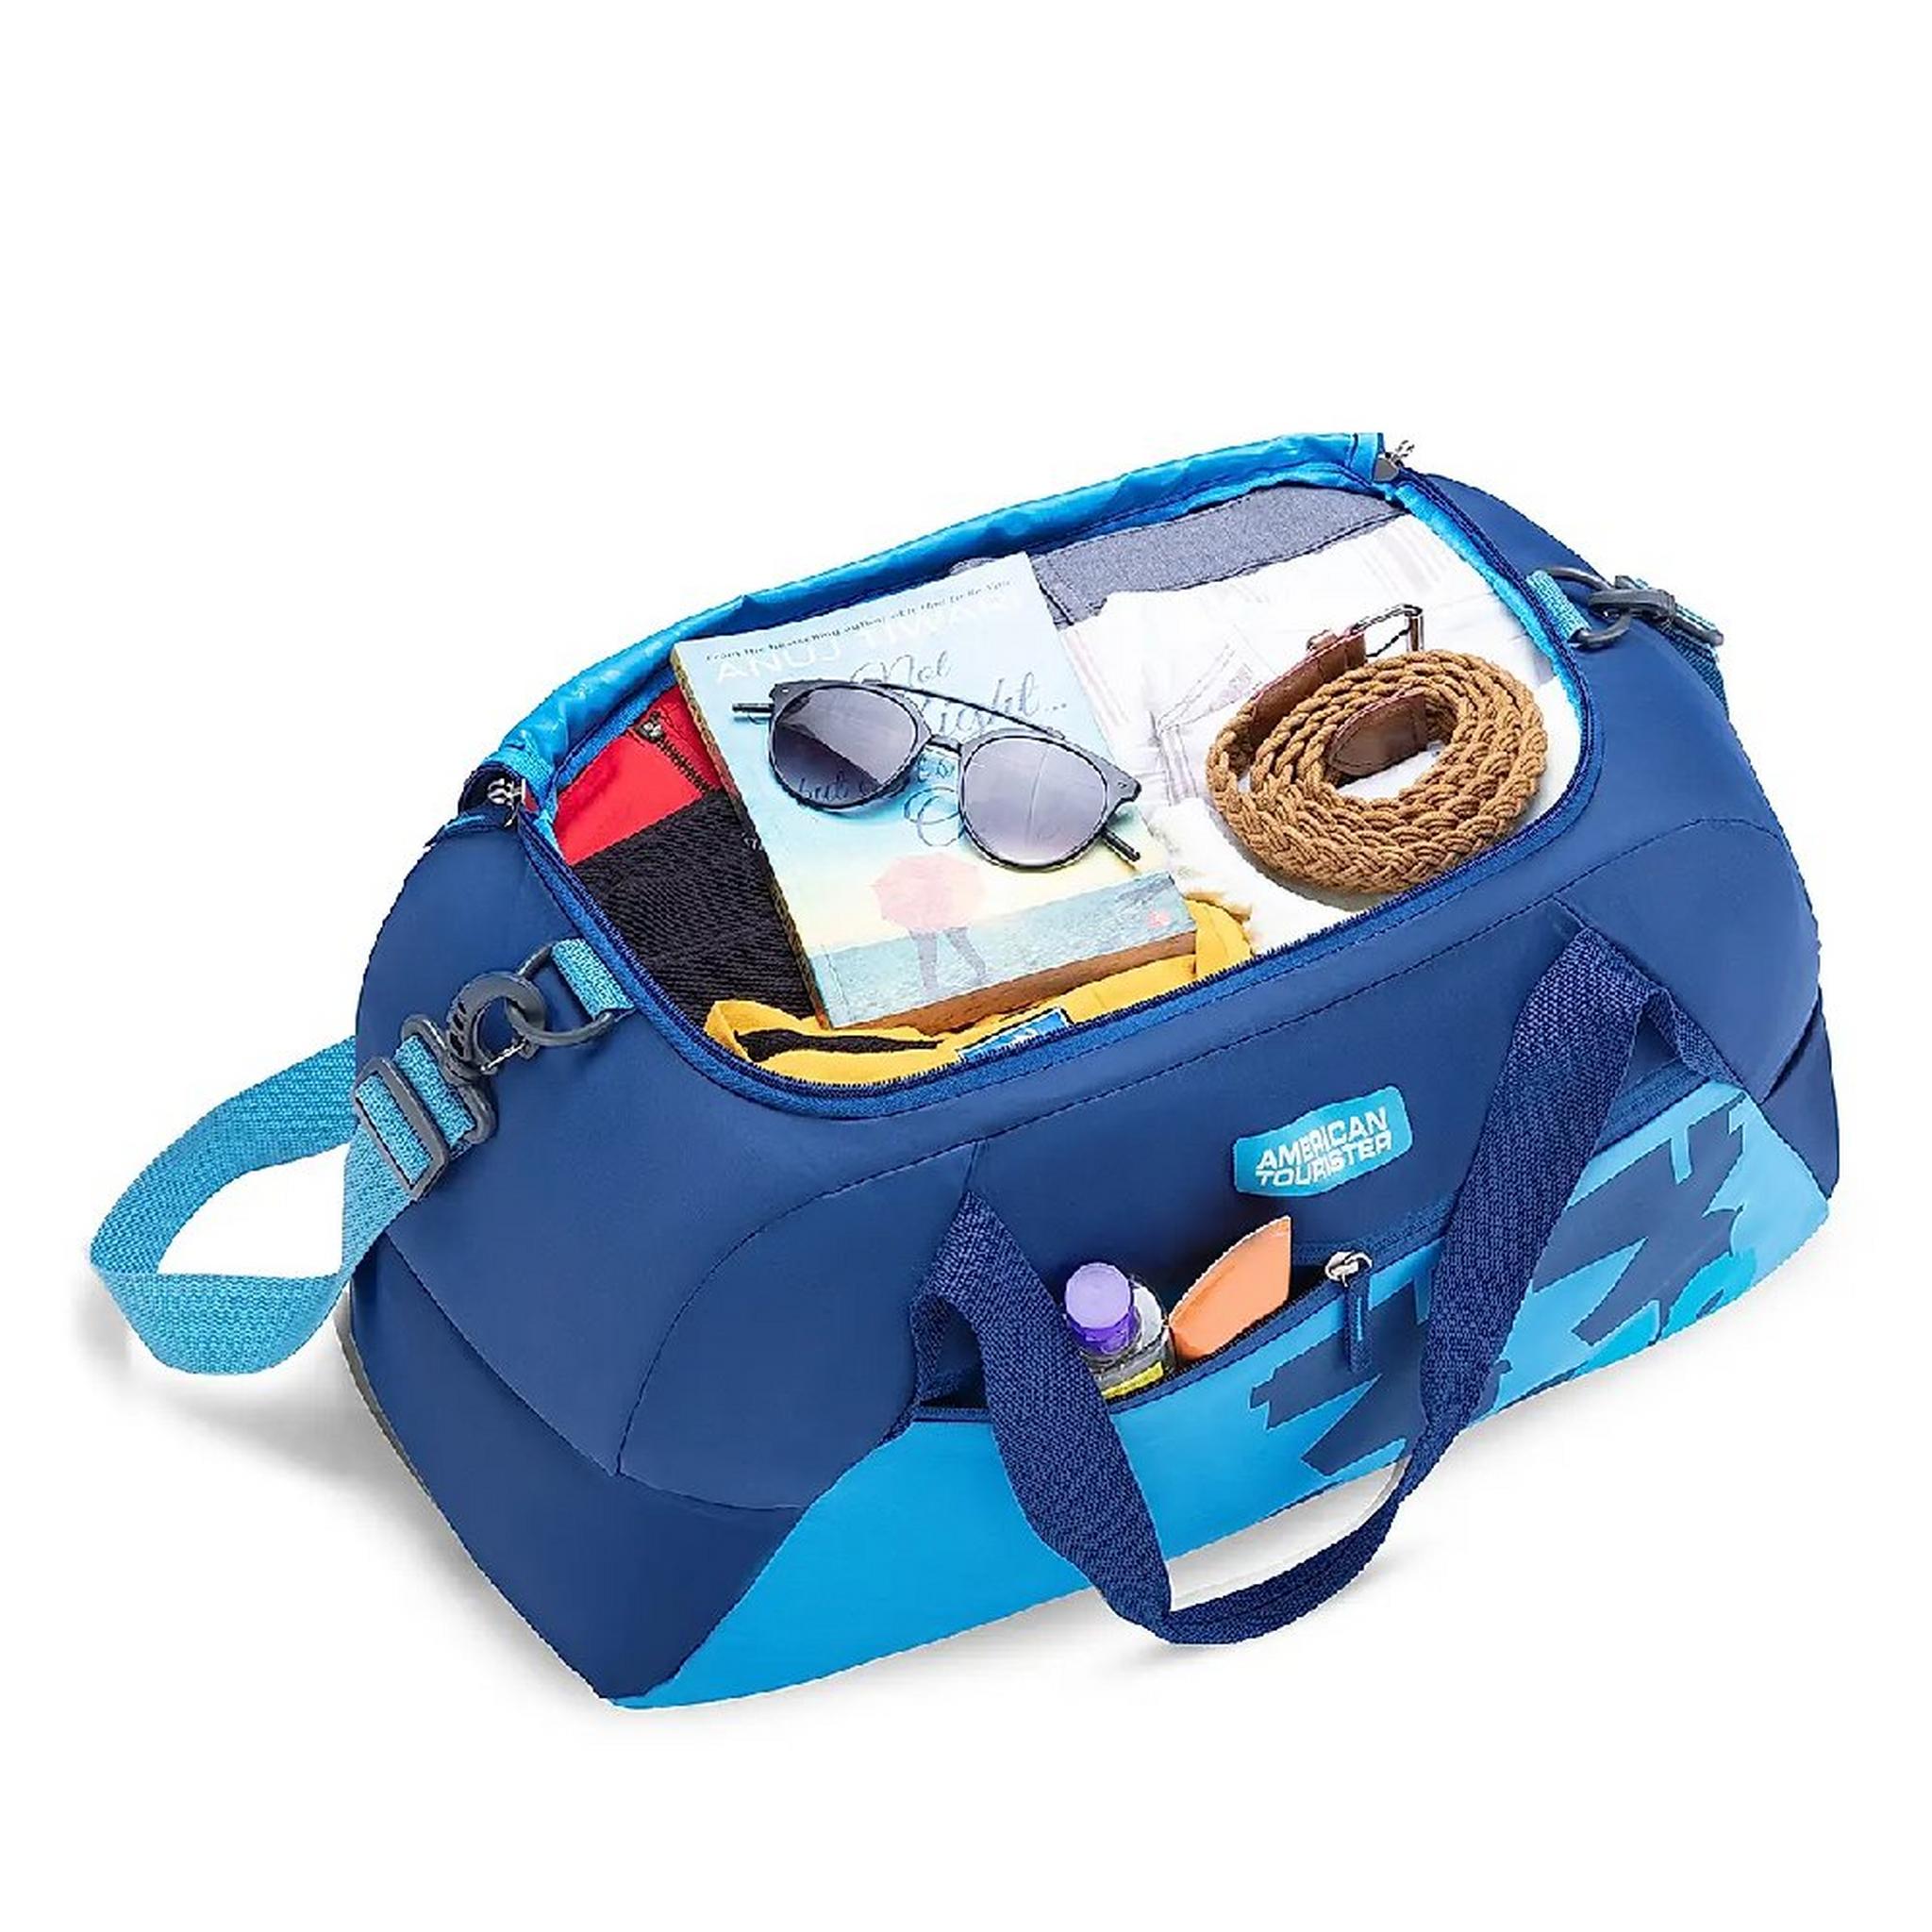 حقيبة كوفو دفل من أمريكان توريستر،  52 سم، LL6X01101 - أزرق